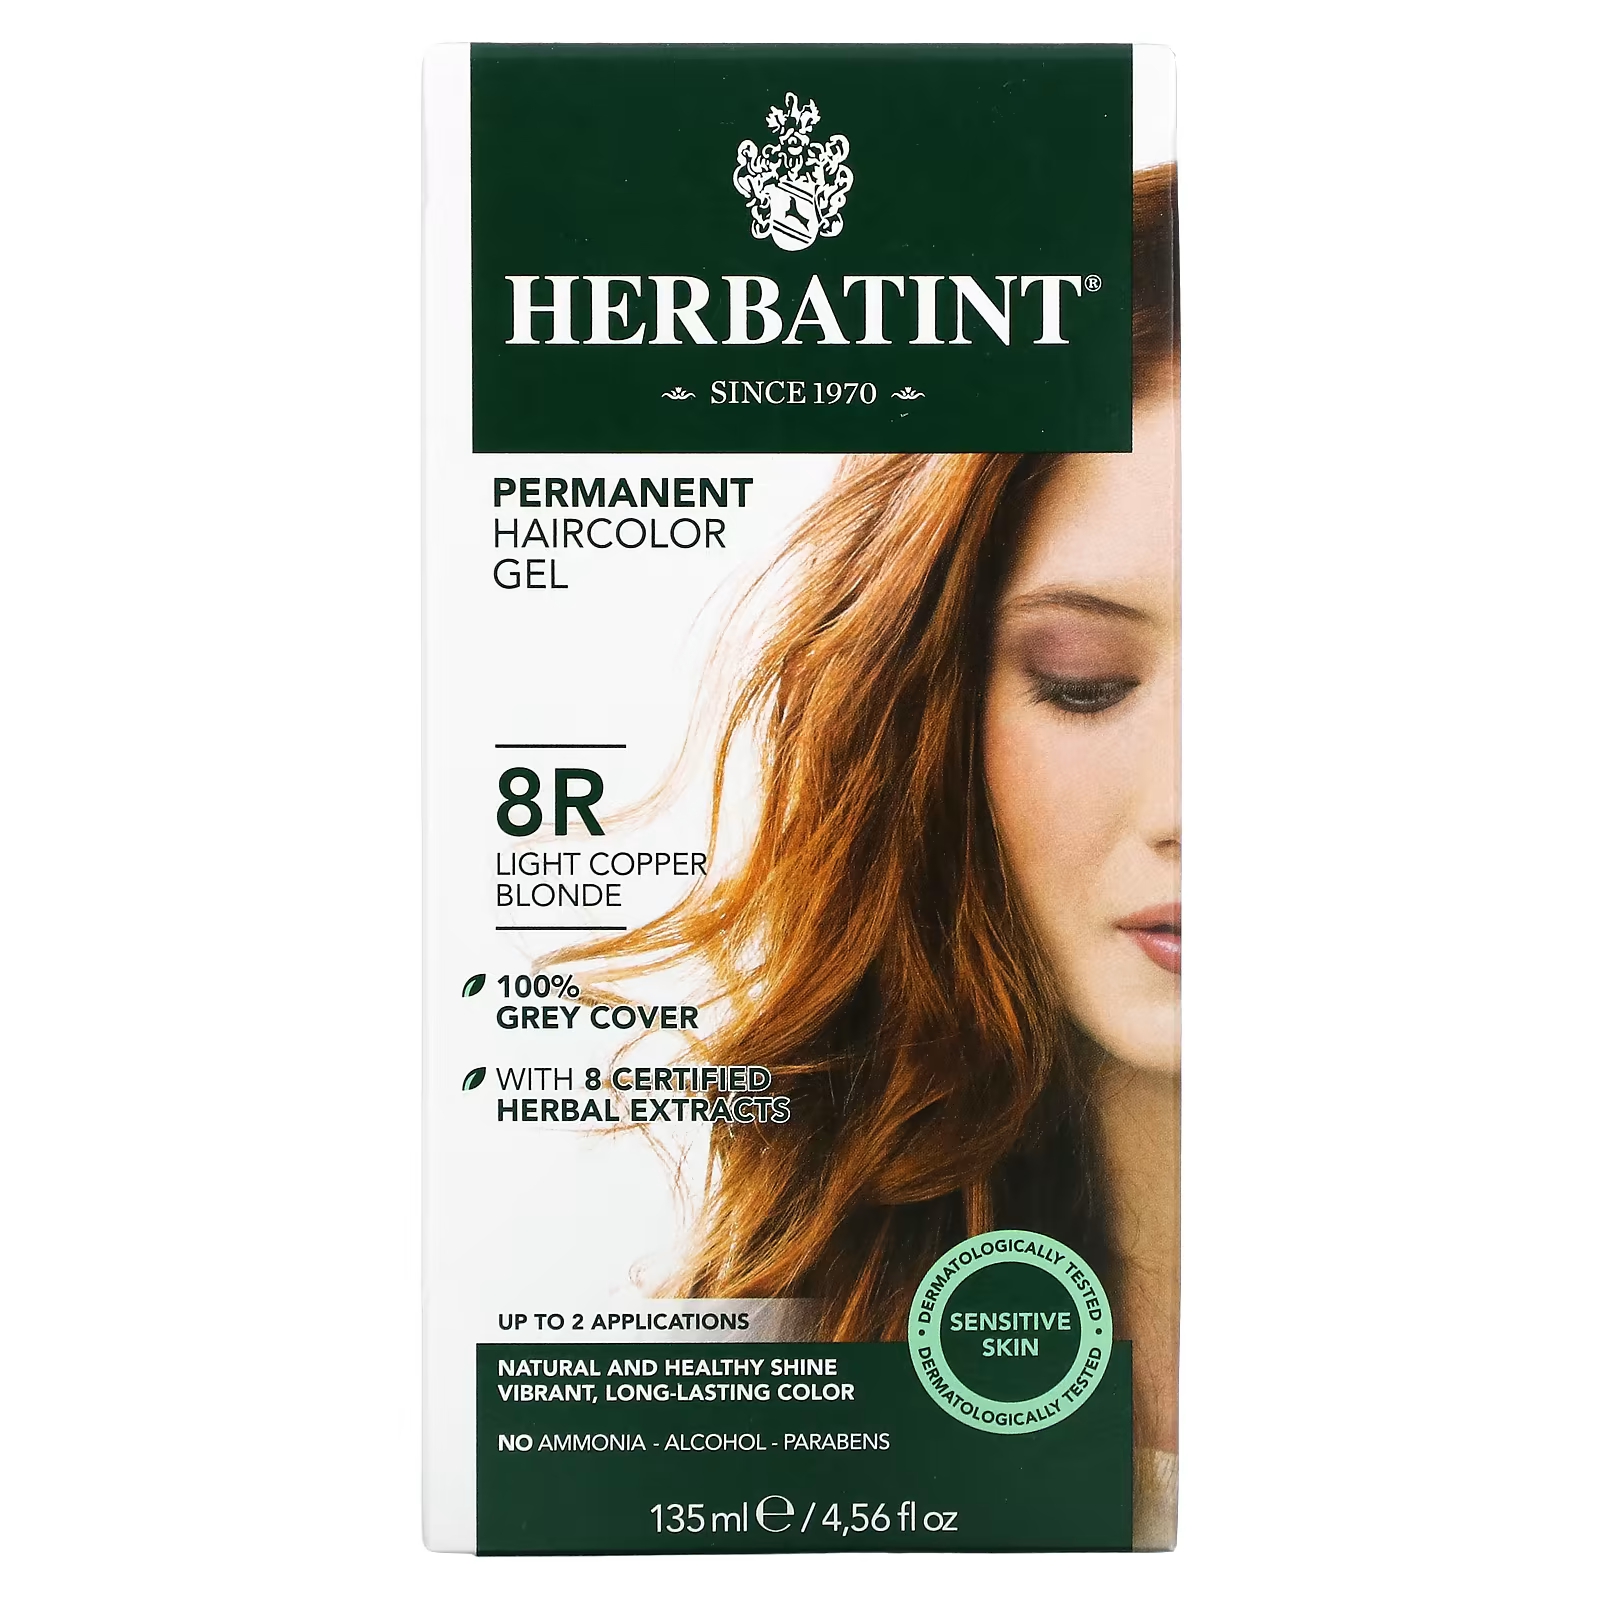 Перманентная гель-краска для волос Herbatint 8R светло-медный блондин, 135 мл перманентная гель краска для волос herbatint 8r светло медный блондин 135 мл